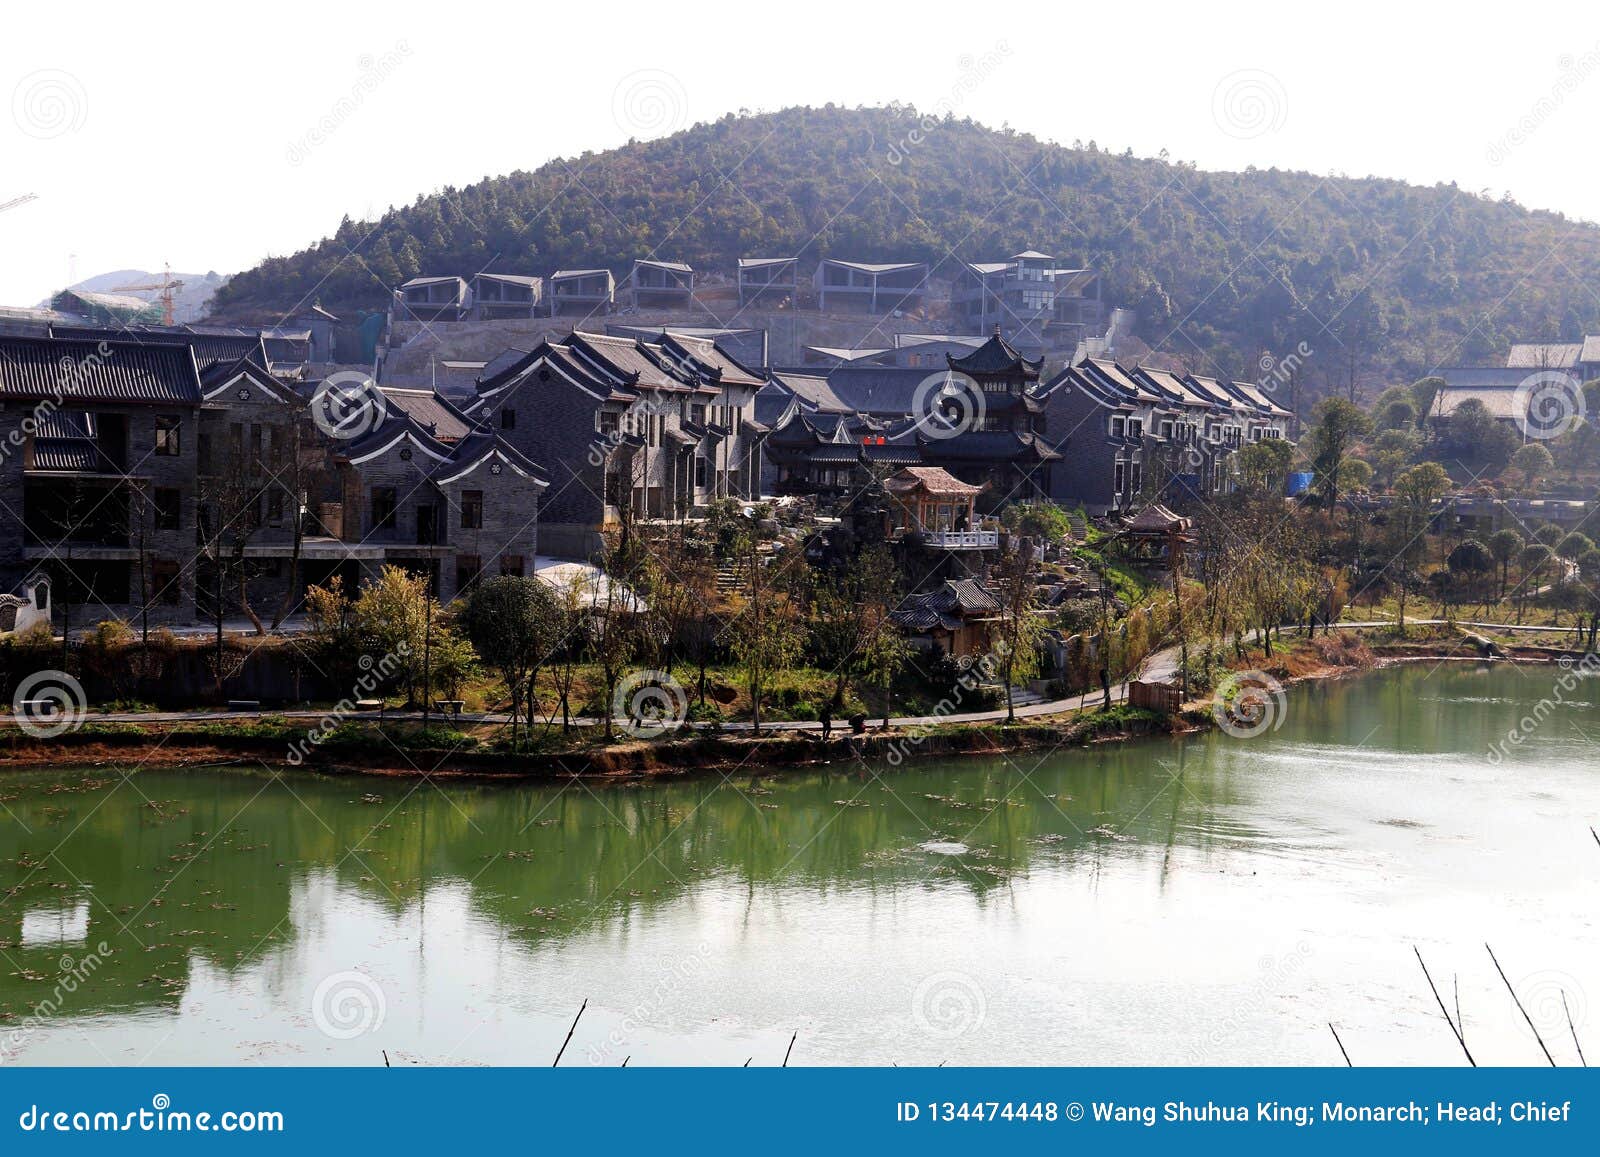 guiyang ancient town